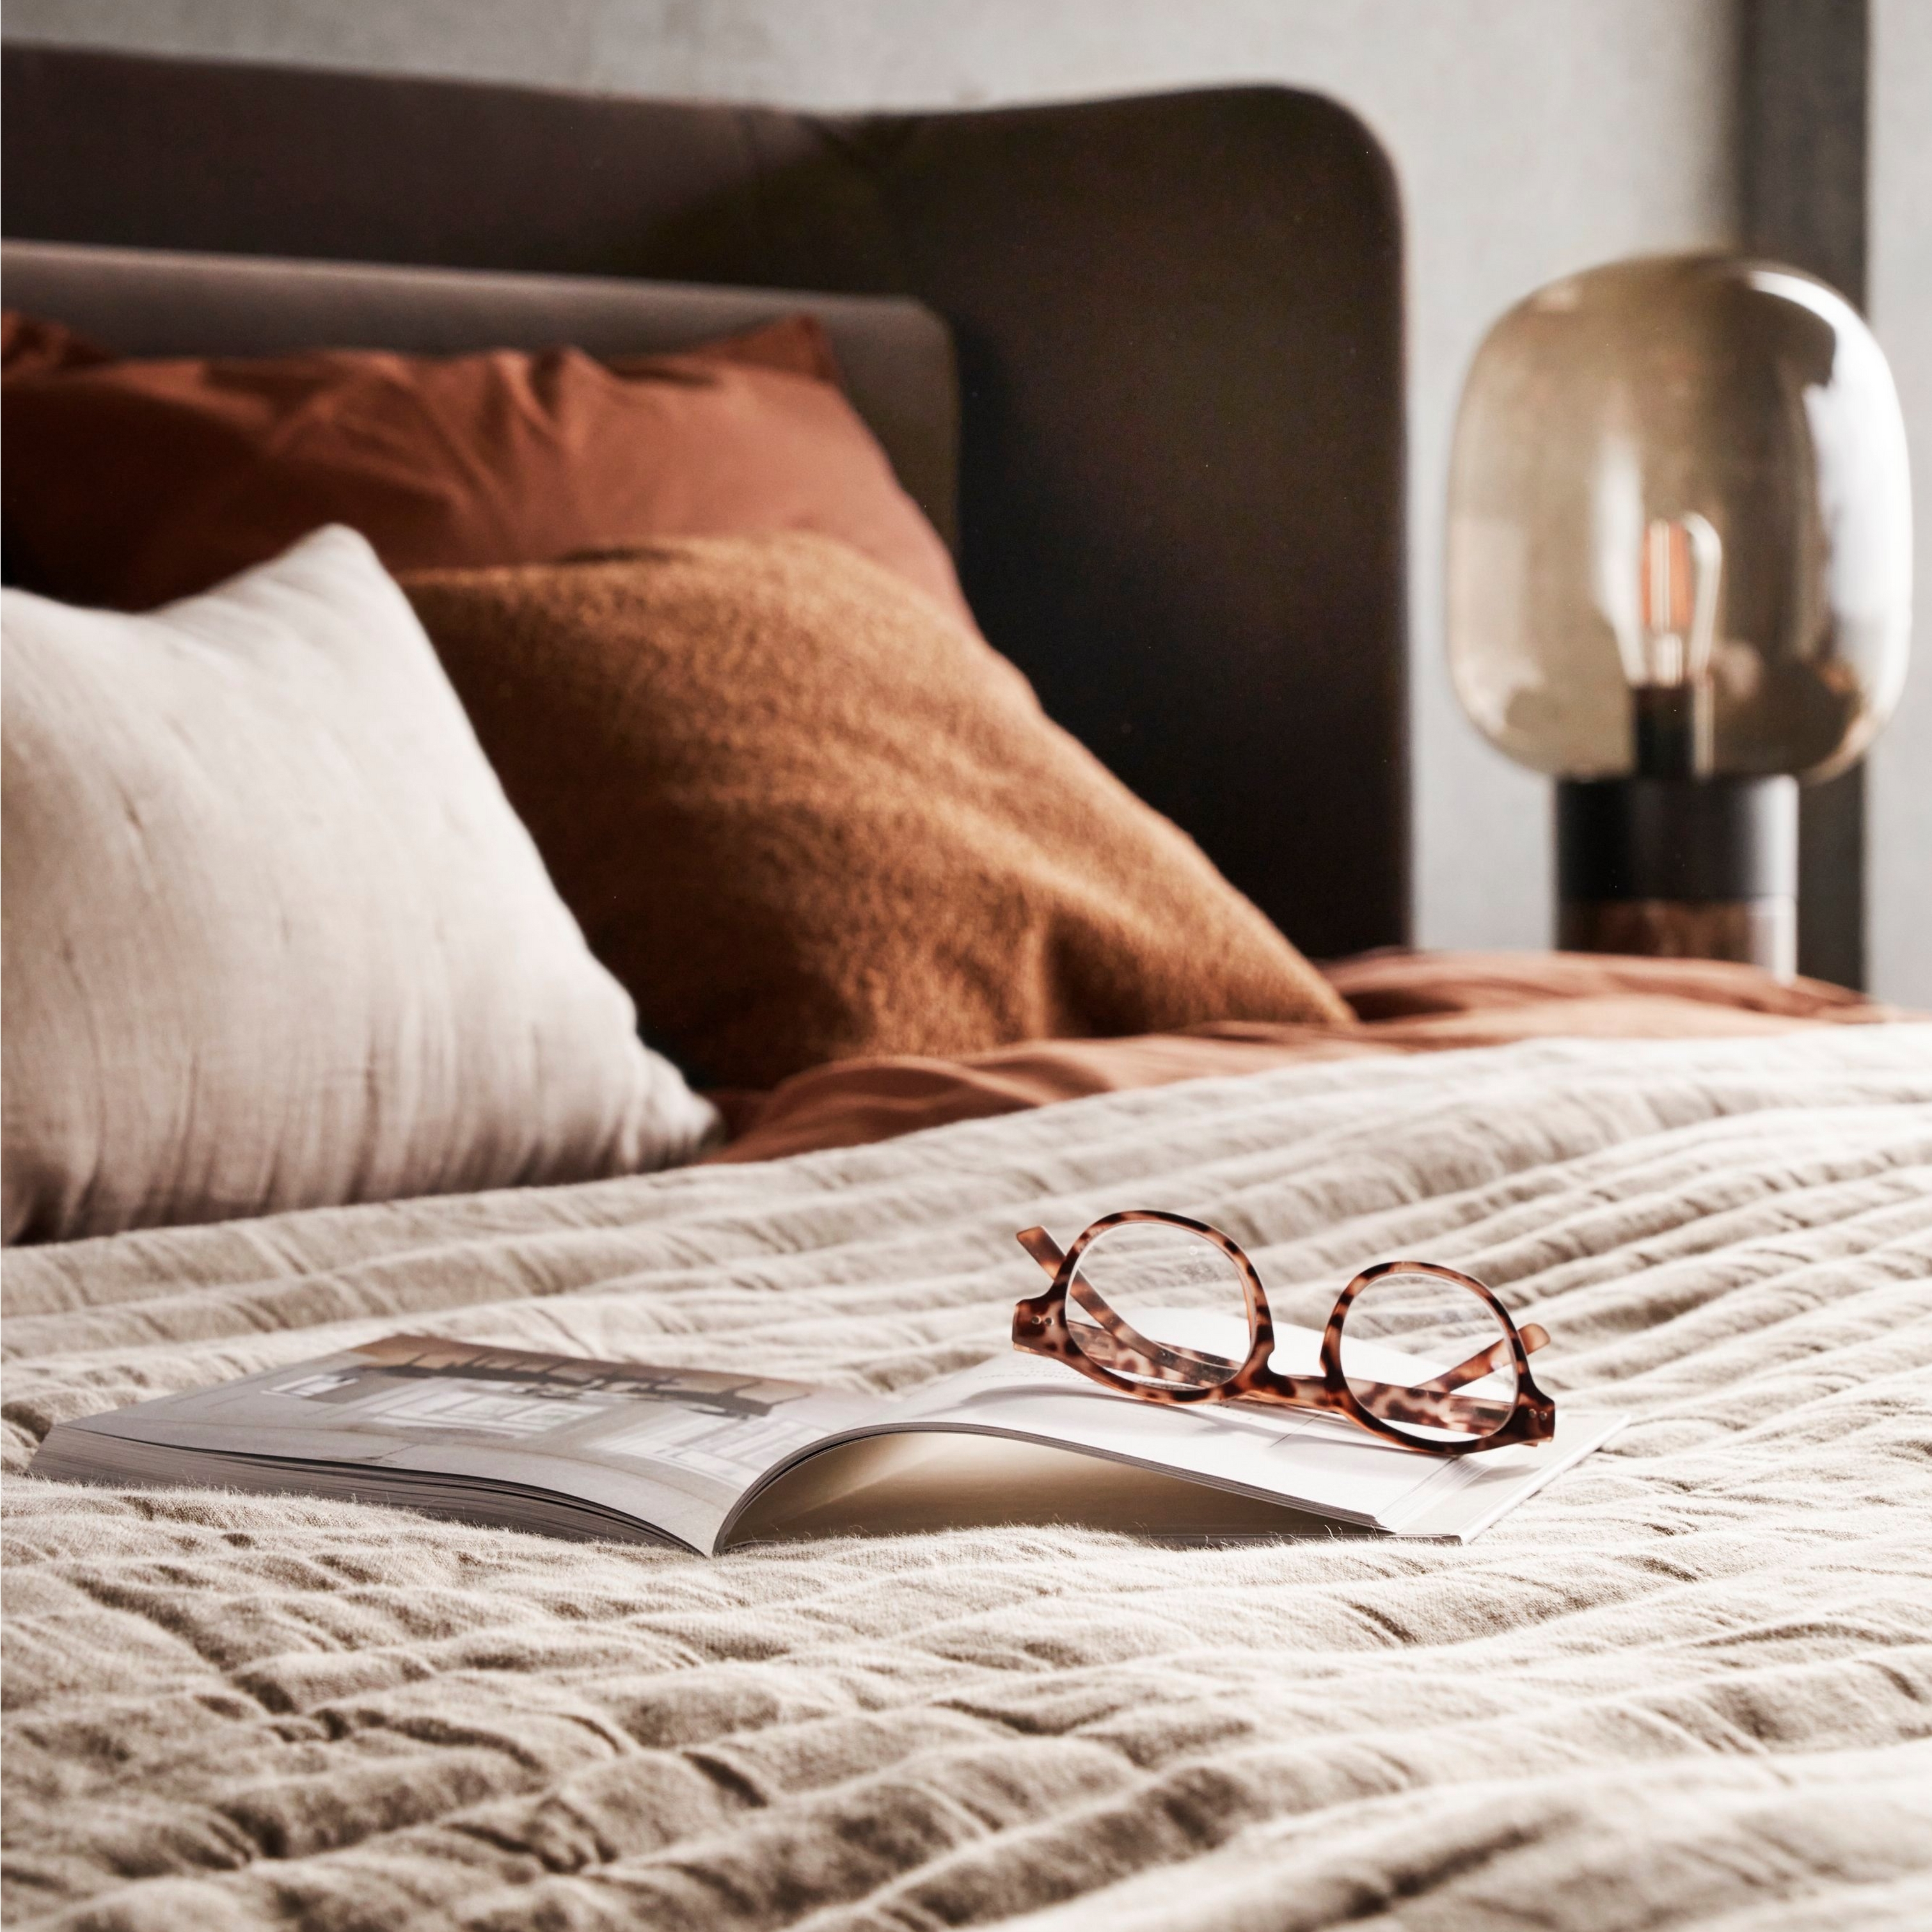 Bett mit strukturierter Bettwäsche, Gläsern auf offenem Buch und weicher Nachttischbeleuchtung.